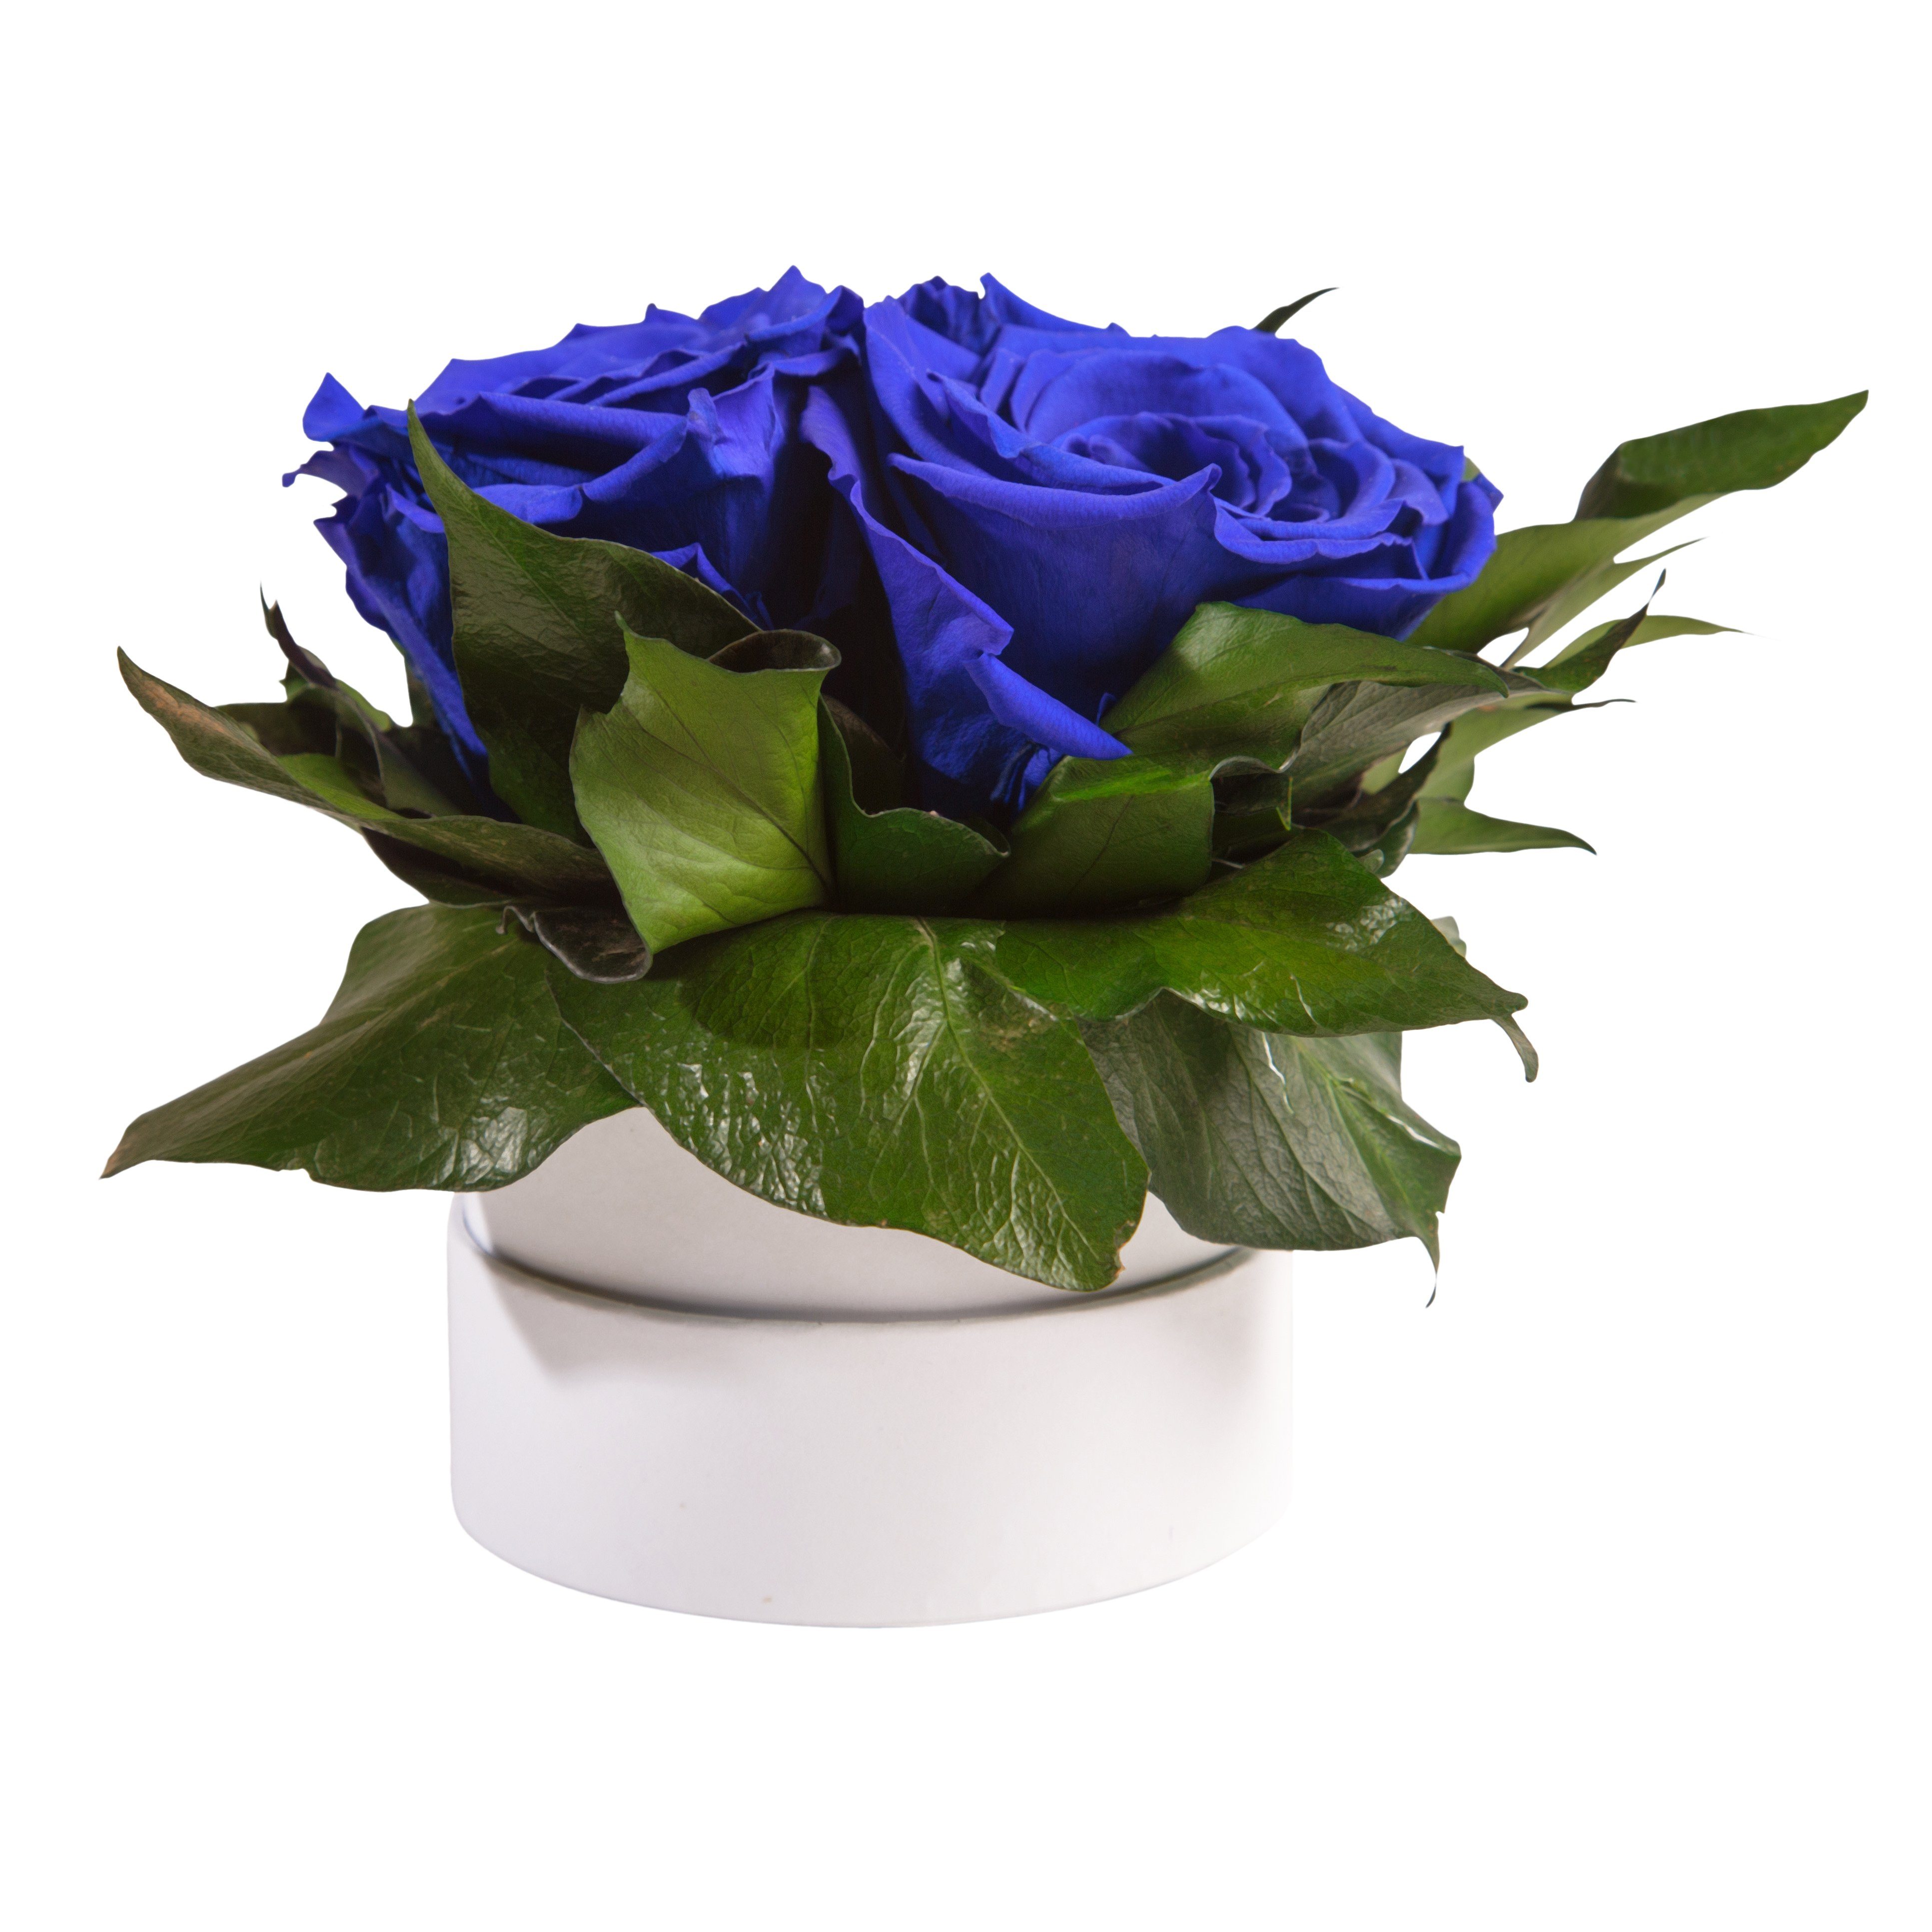 Kunstblume Infinity Rosenbox weiß rund 10 Rose, Höhe echte 3 cm, Blau Sie für Rosen Heidelberg, Rosen SCHULZ ROSEMARIE Geschenk konserviert